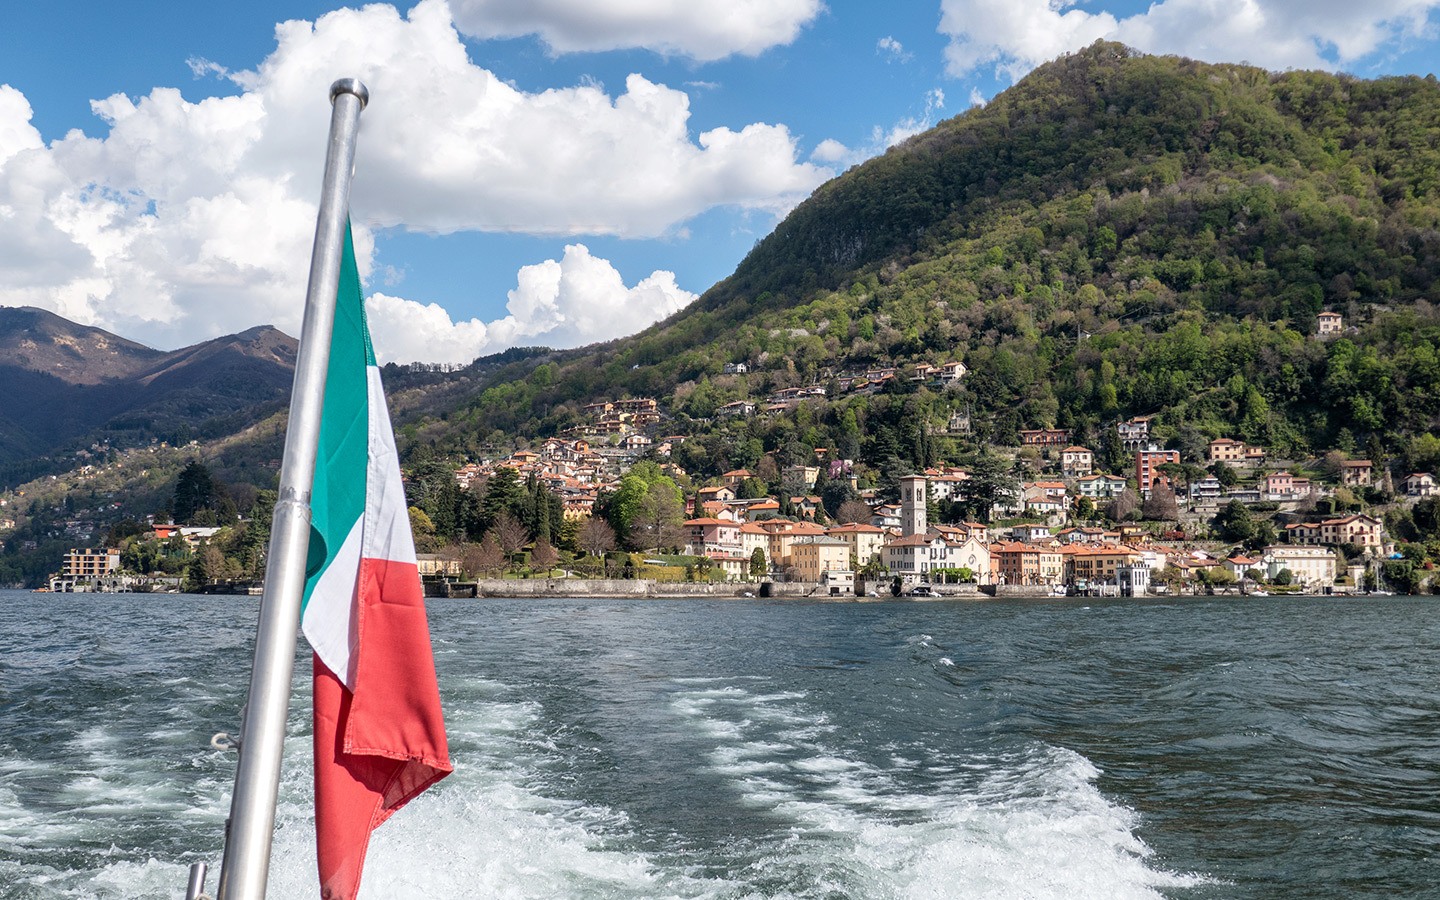 Basin of Como boat trip on Lake Como with Navigazione Laghi